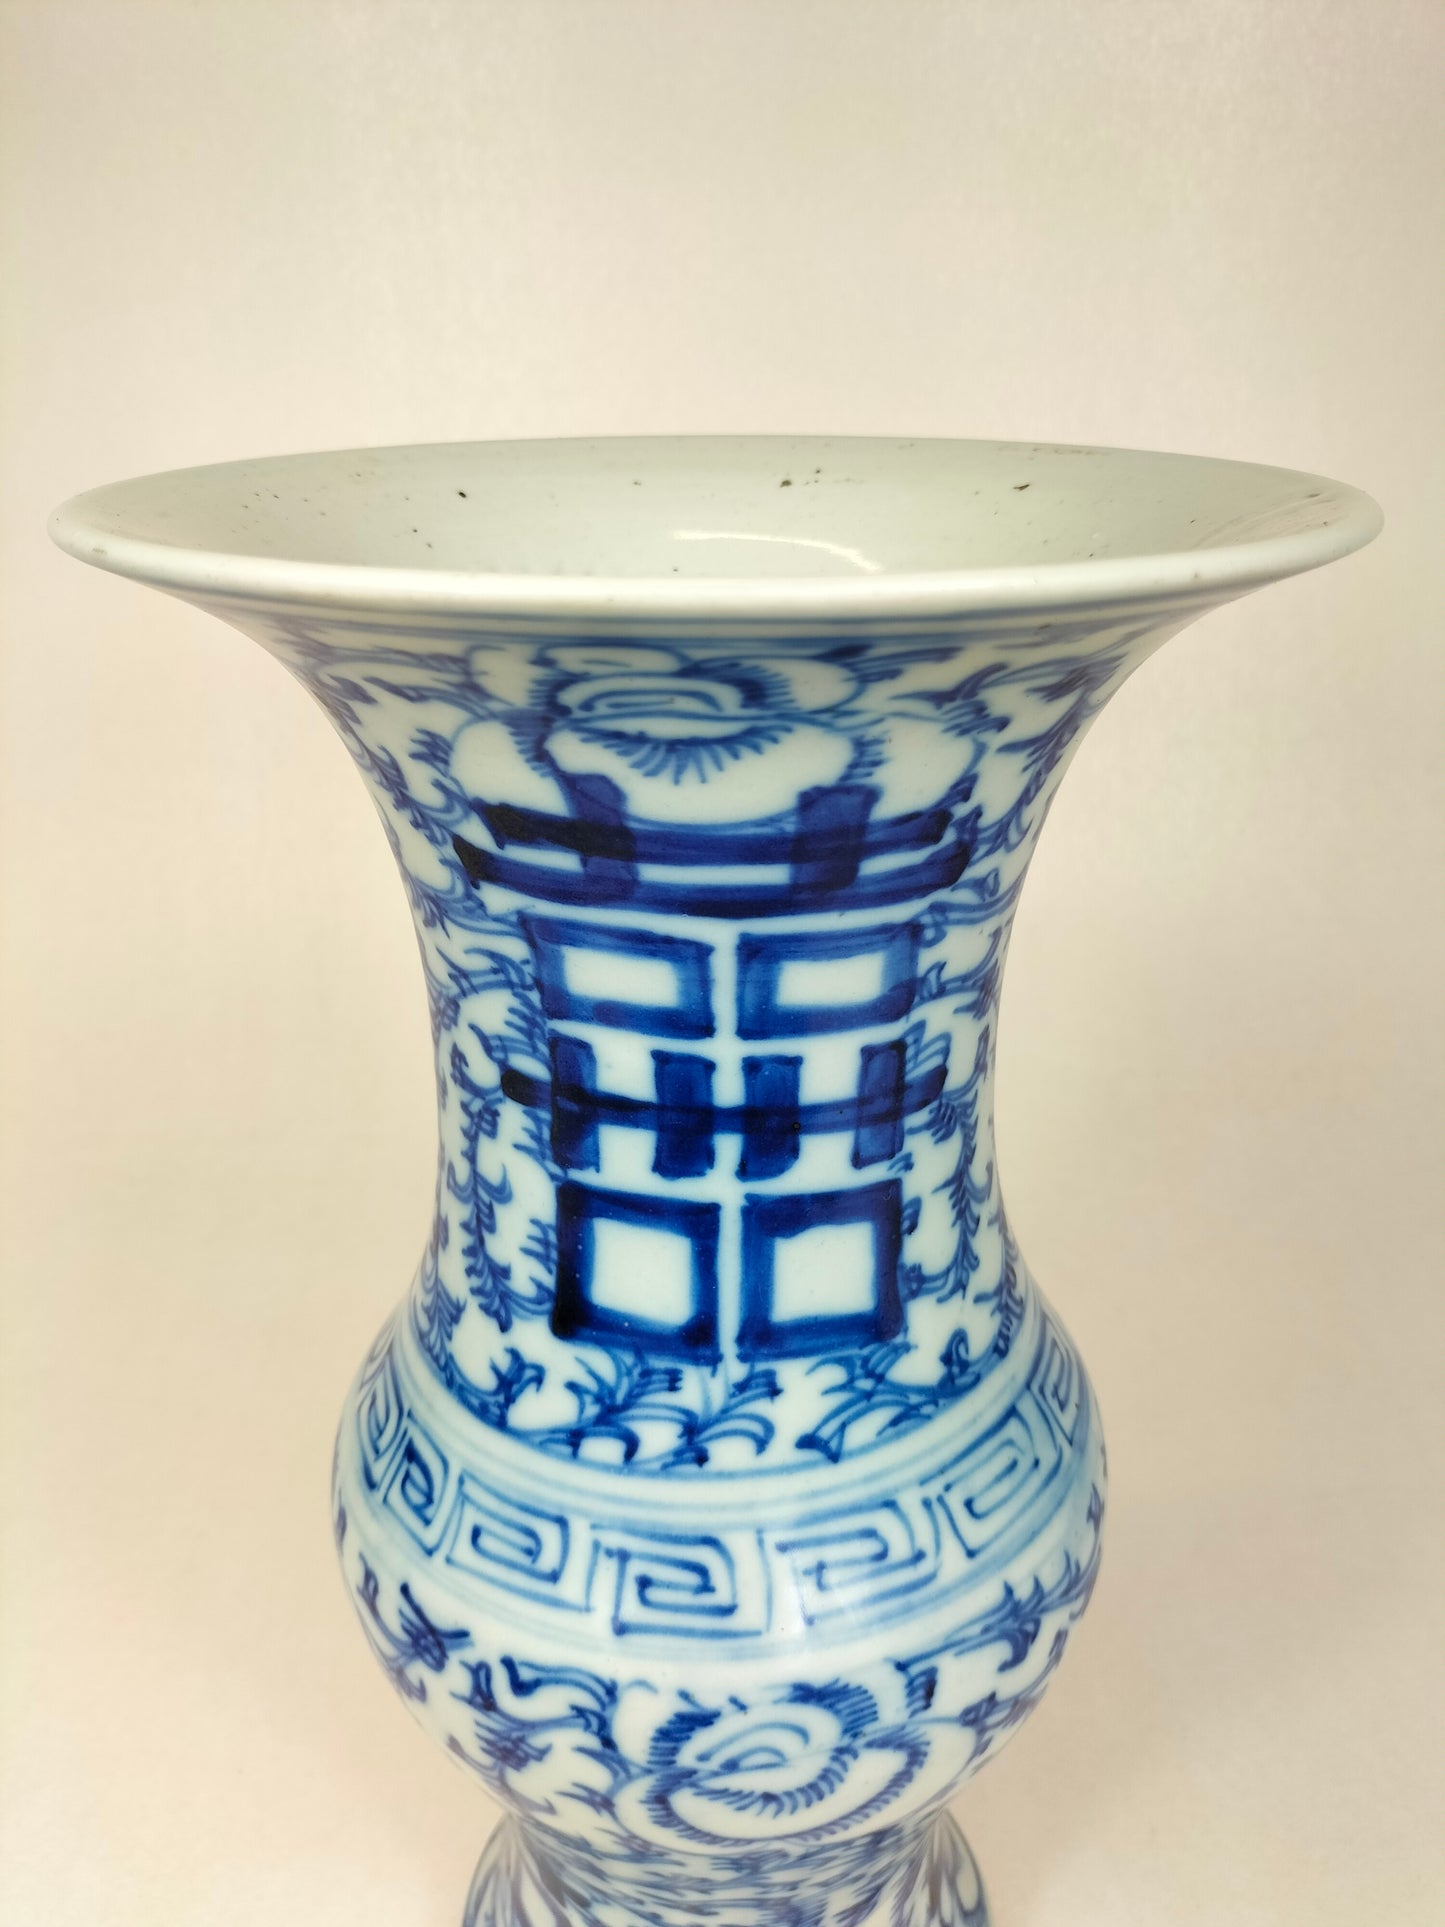 中国古董双喜 yen yen 花瓶 // 清朝 - 19 世纪